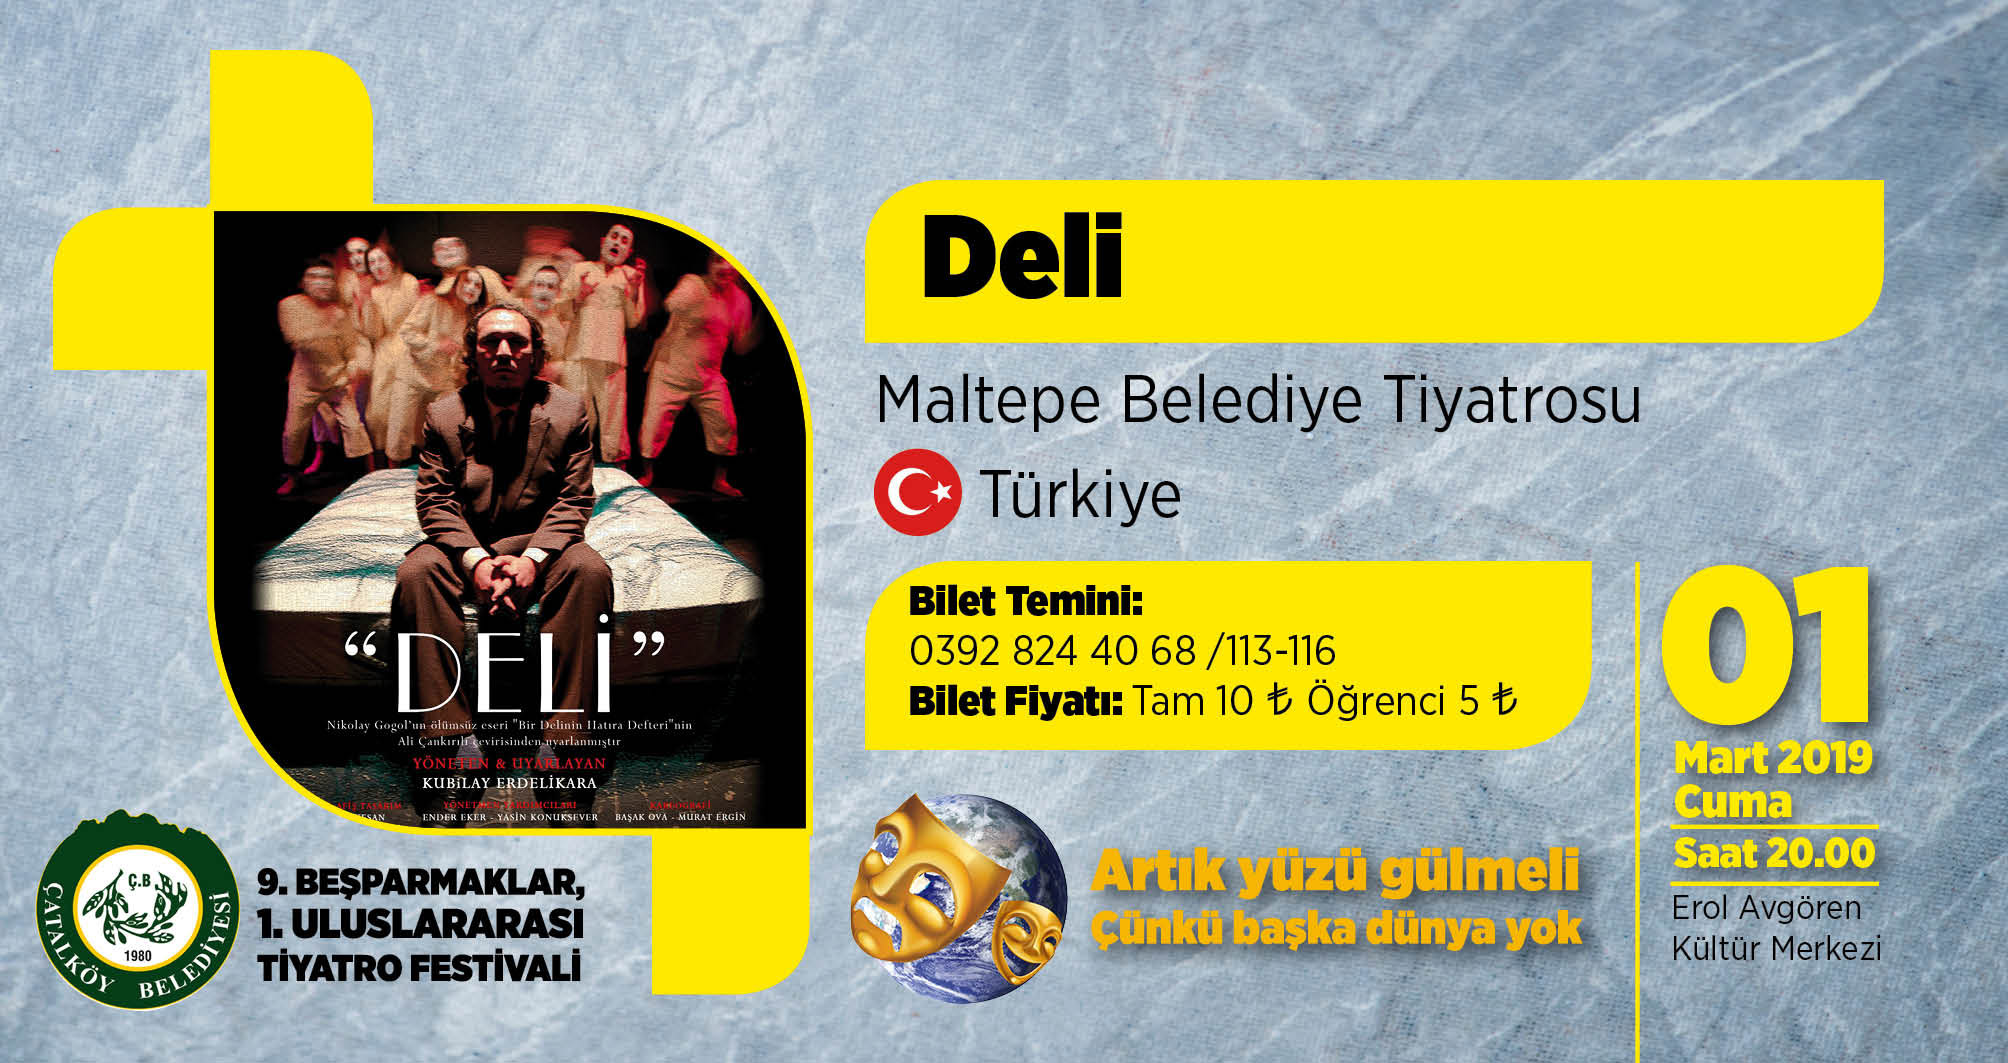 Uluslararası Beşparmaklar Tiyatro Festivali, bugün “Deli” adlı oyunuyla başlayacak